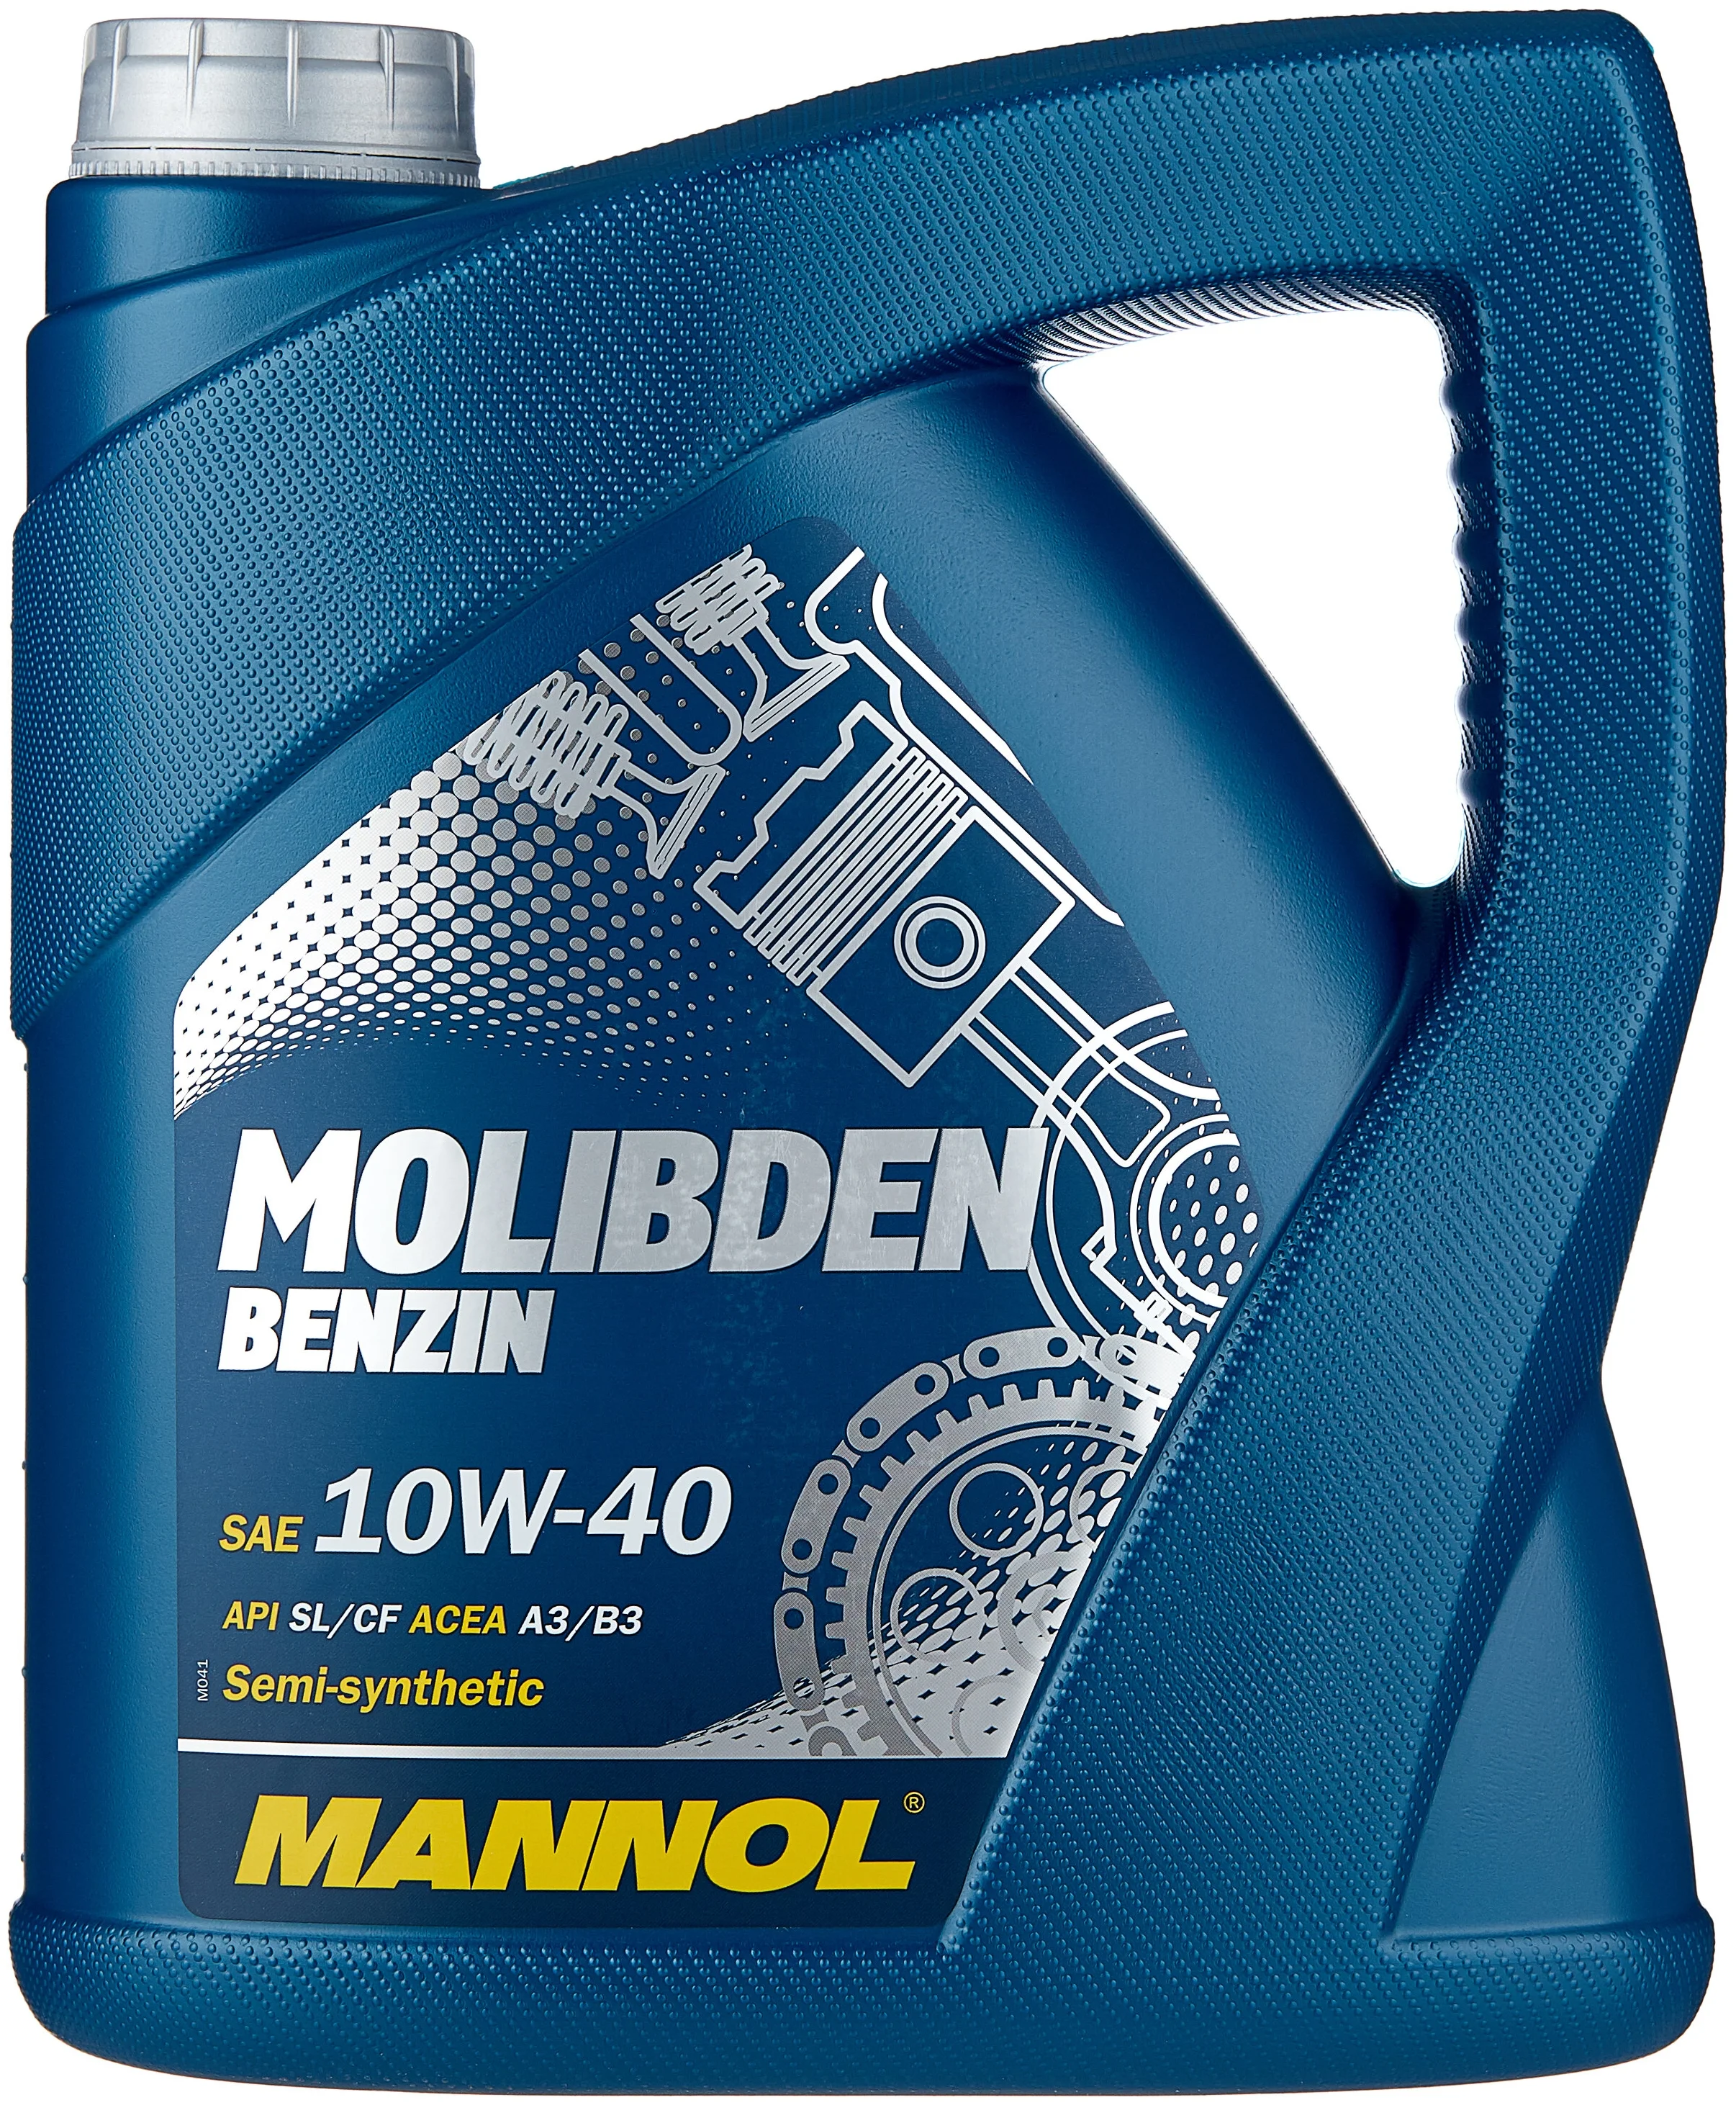 Mannol Molibden Benzin 10W-40 - класс ACEA А3/В3